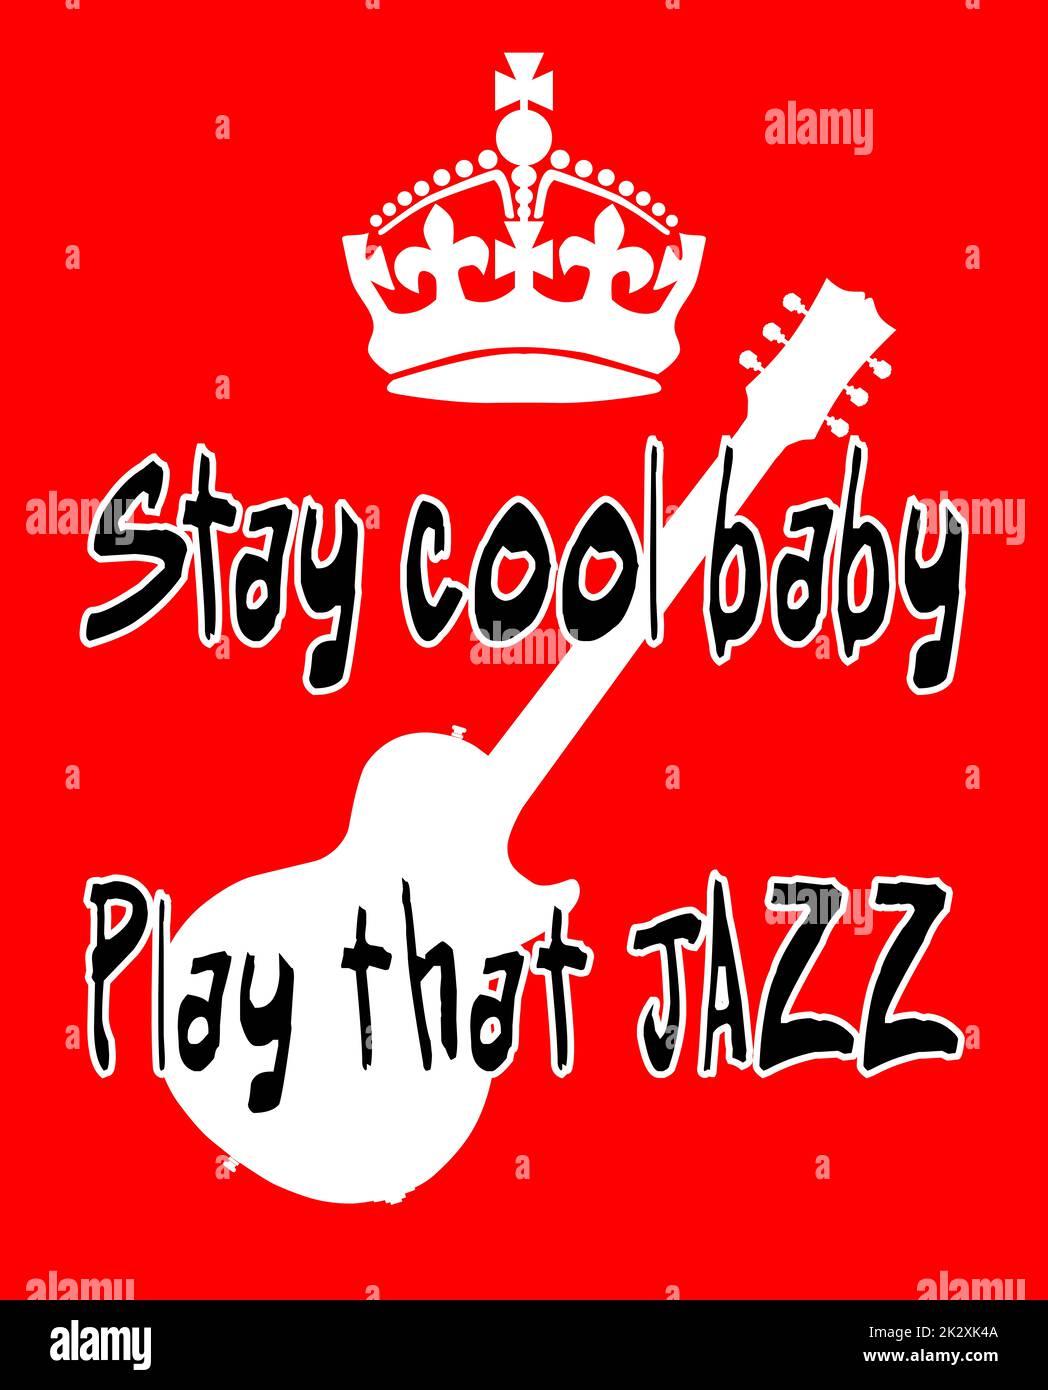 Mantenga tranquilo cartel de la corona con la guitarra y el texto Manténgase fresco bebé tocar ese jazz Foto de stock